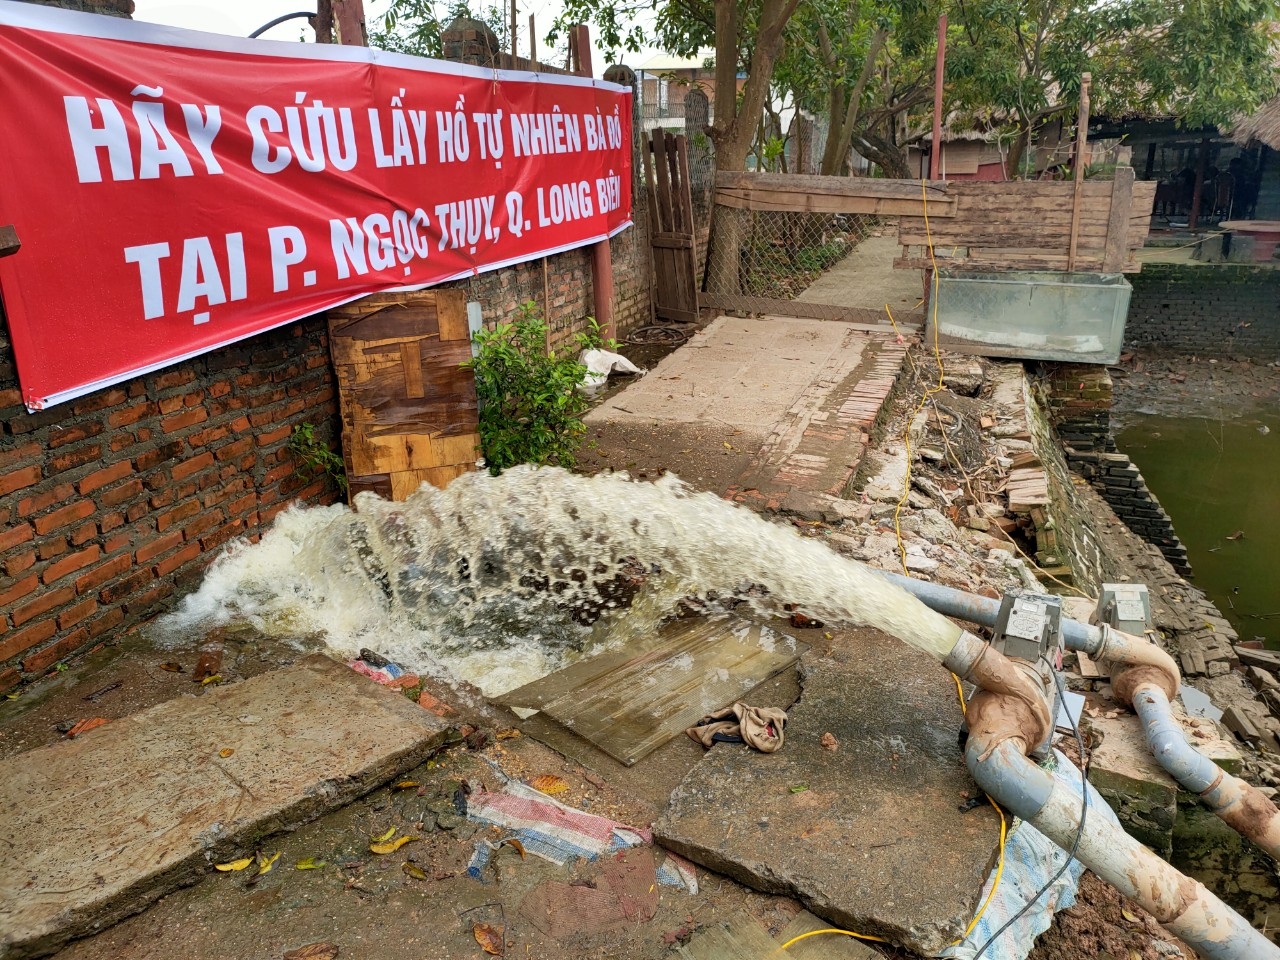 Hàng trăm hộ dân phường Ngọc Thụy phản đối vụ lấp hồ bán đất ở Long Biên